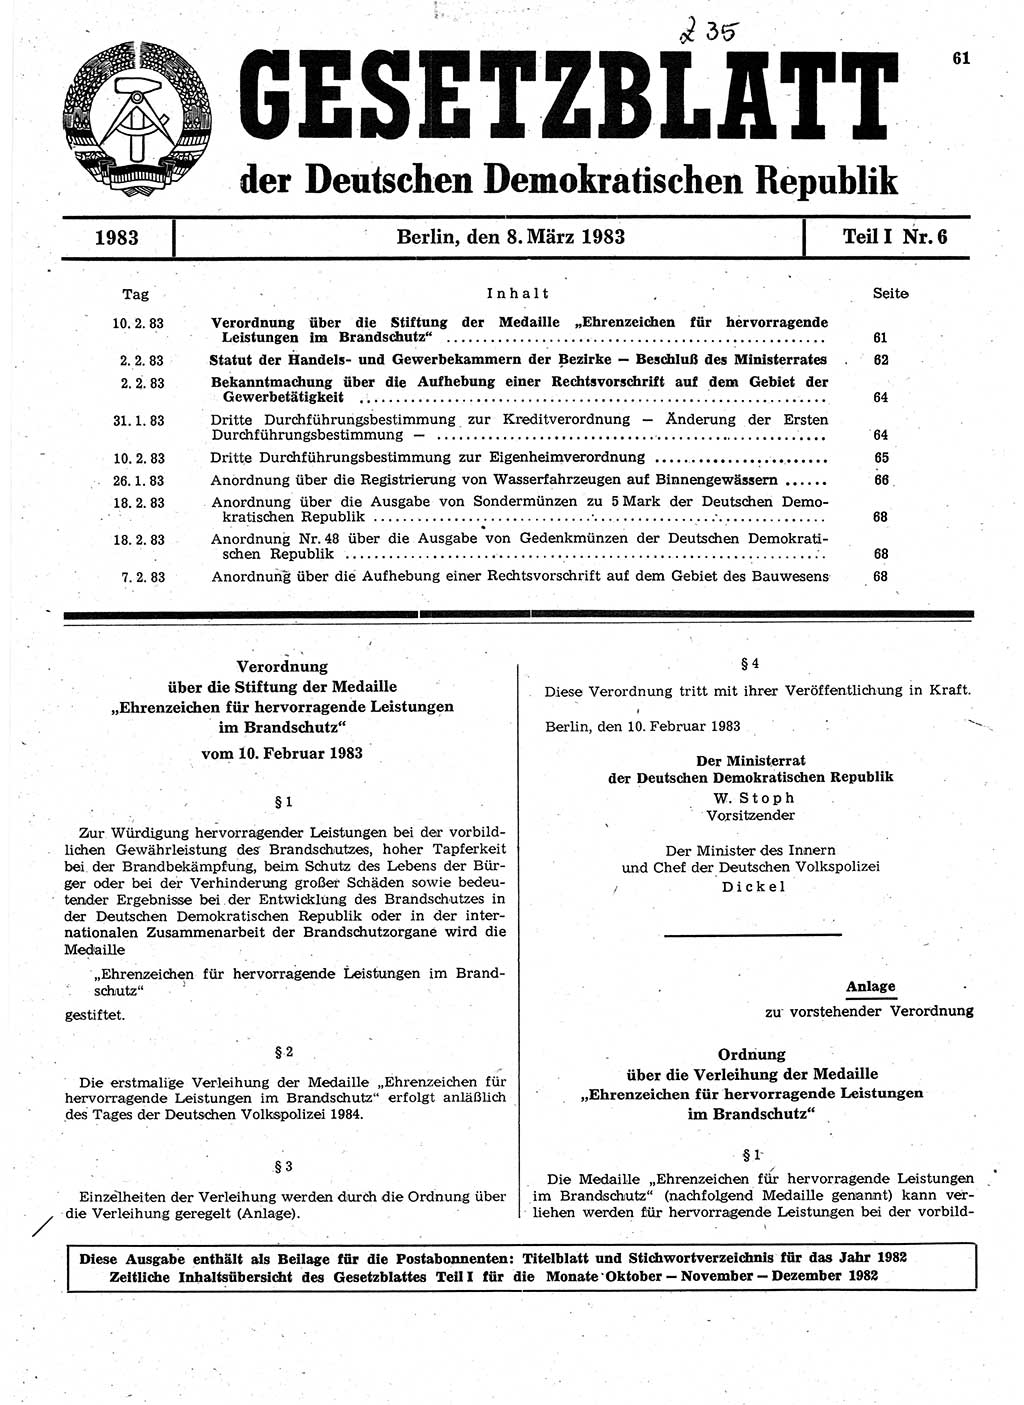 Gesetzblatt (GBl.) der Deutschen Demokratischen Republik (DDR) Teil Ⅰ 1983, Seite 61 (GBl. DDR Ⅰ 1983, S. 61)